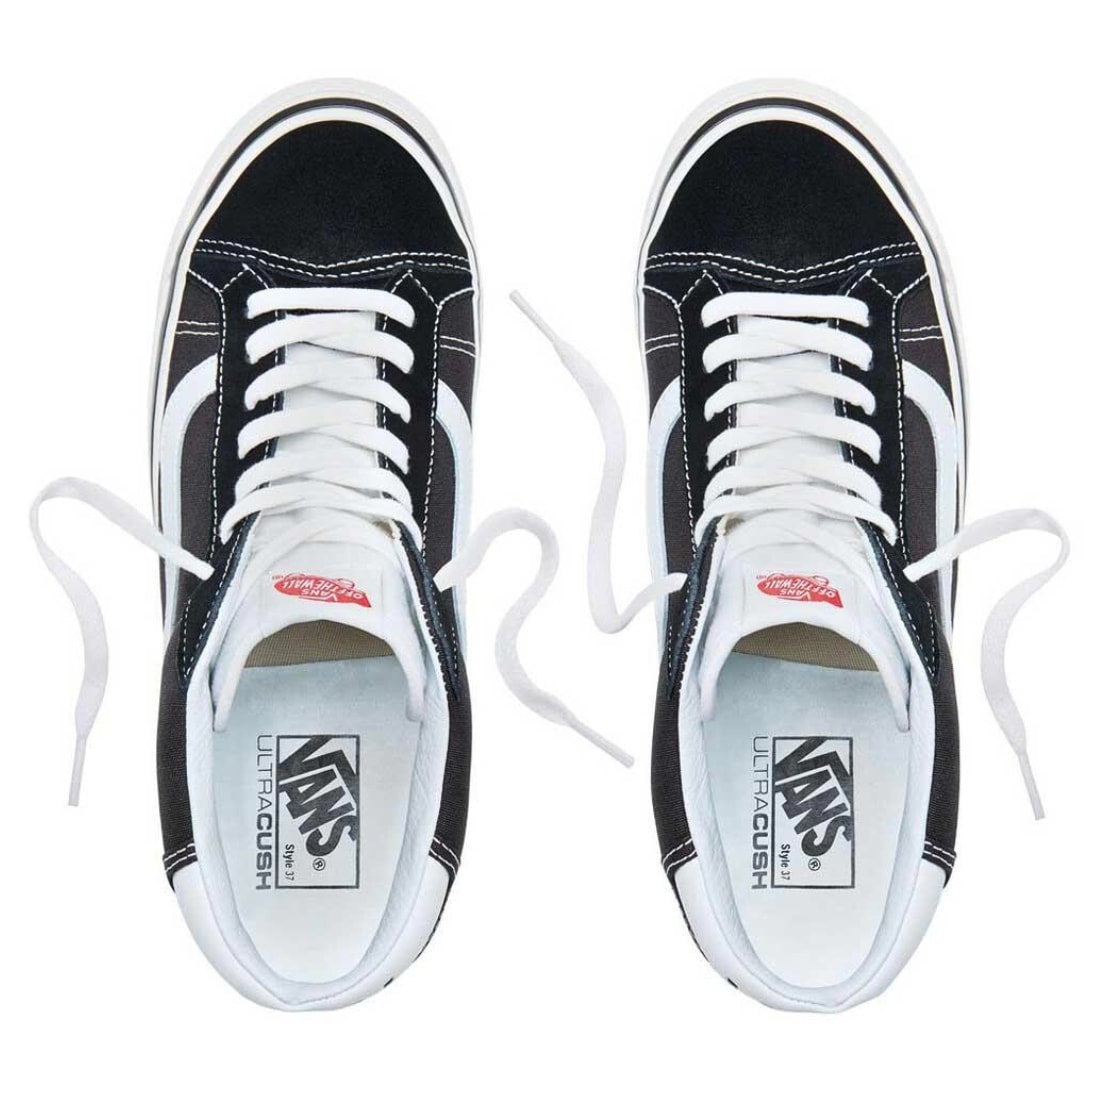 Vans Mid Skool 37 Shoes - Black/True White - Mens High Top Trainers by Vans